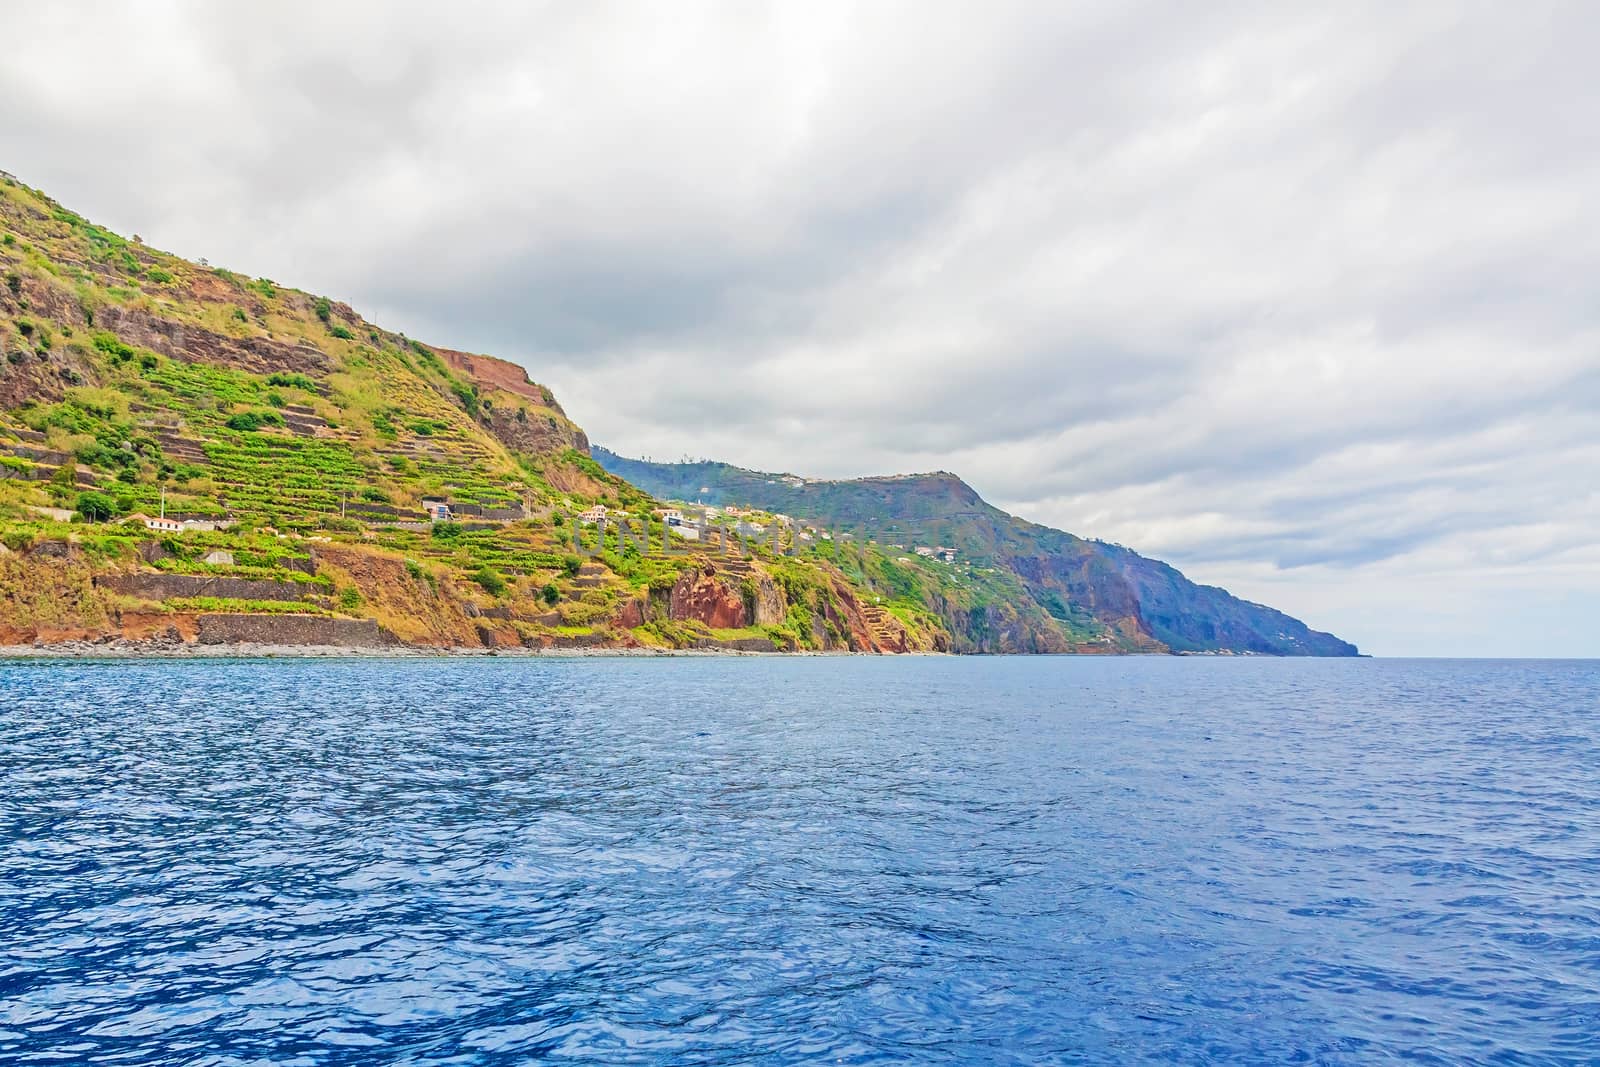 Coastline near Calheta, Madeira, Portugal by aldorado